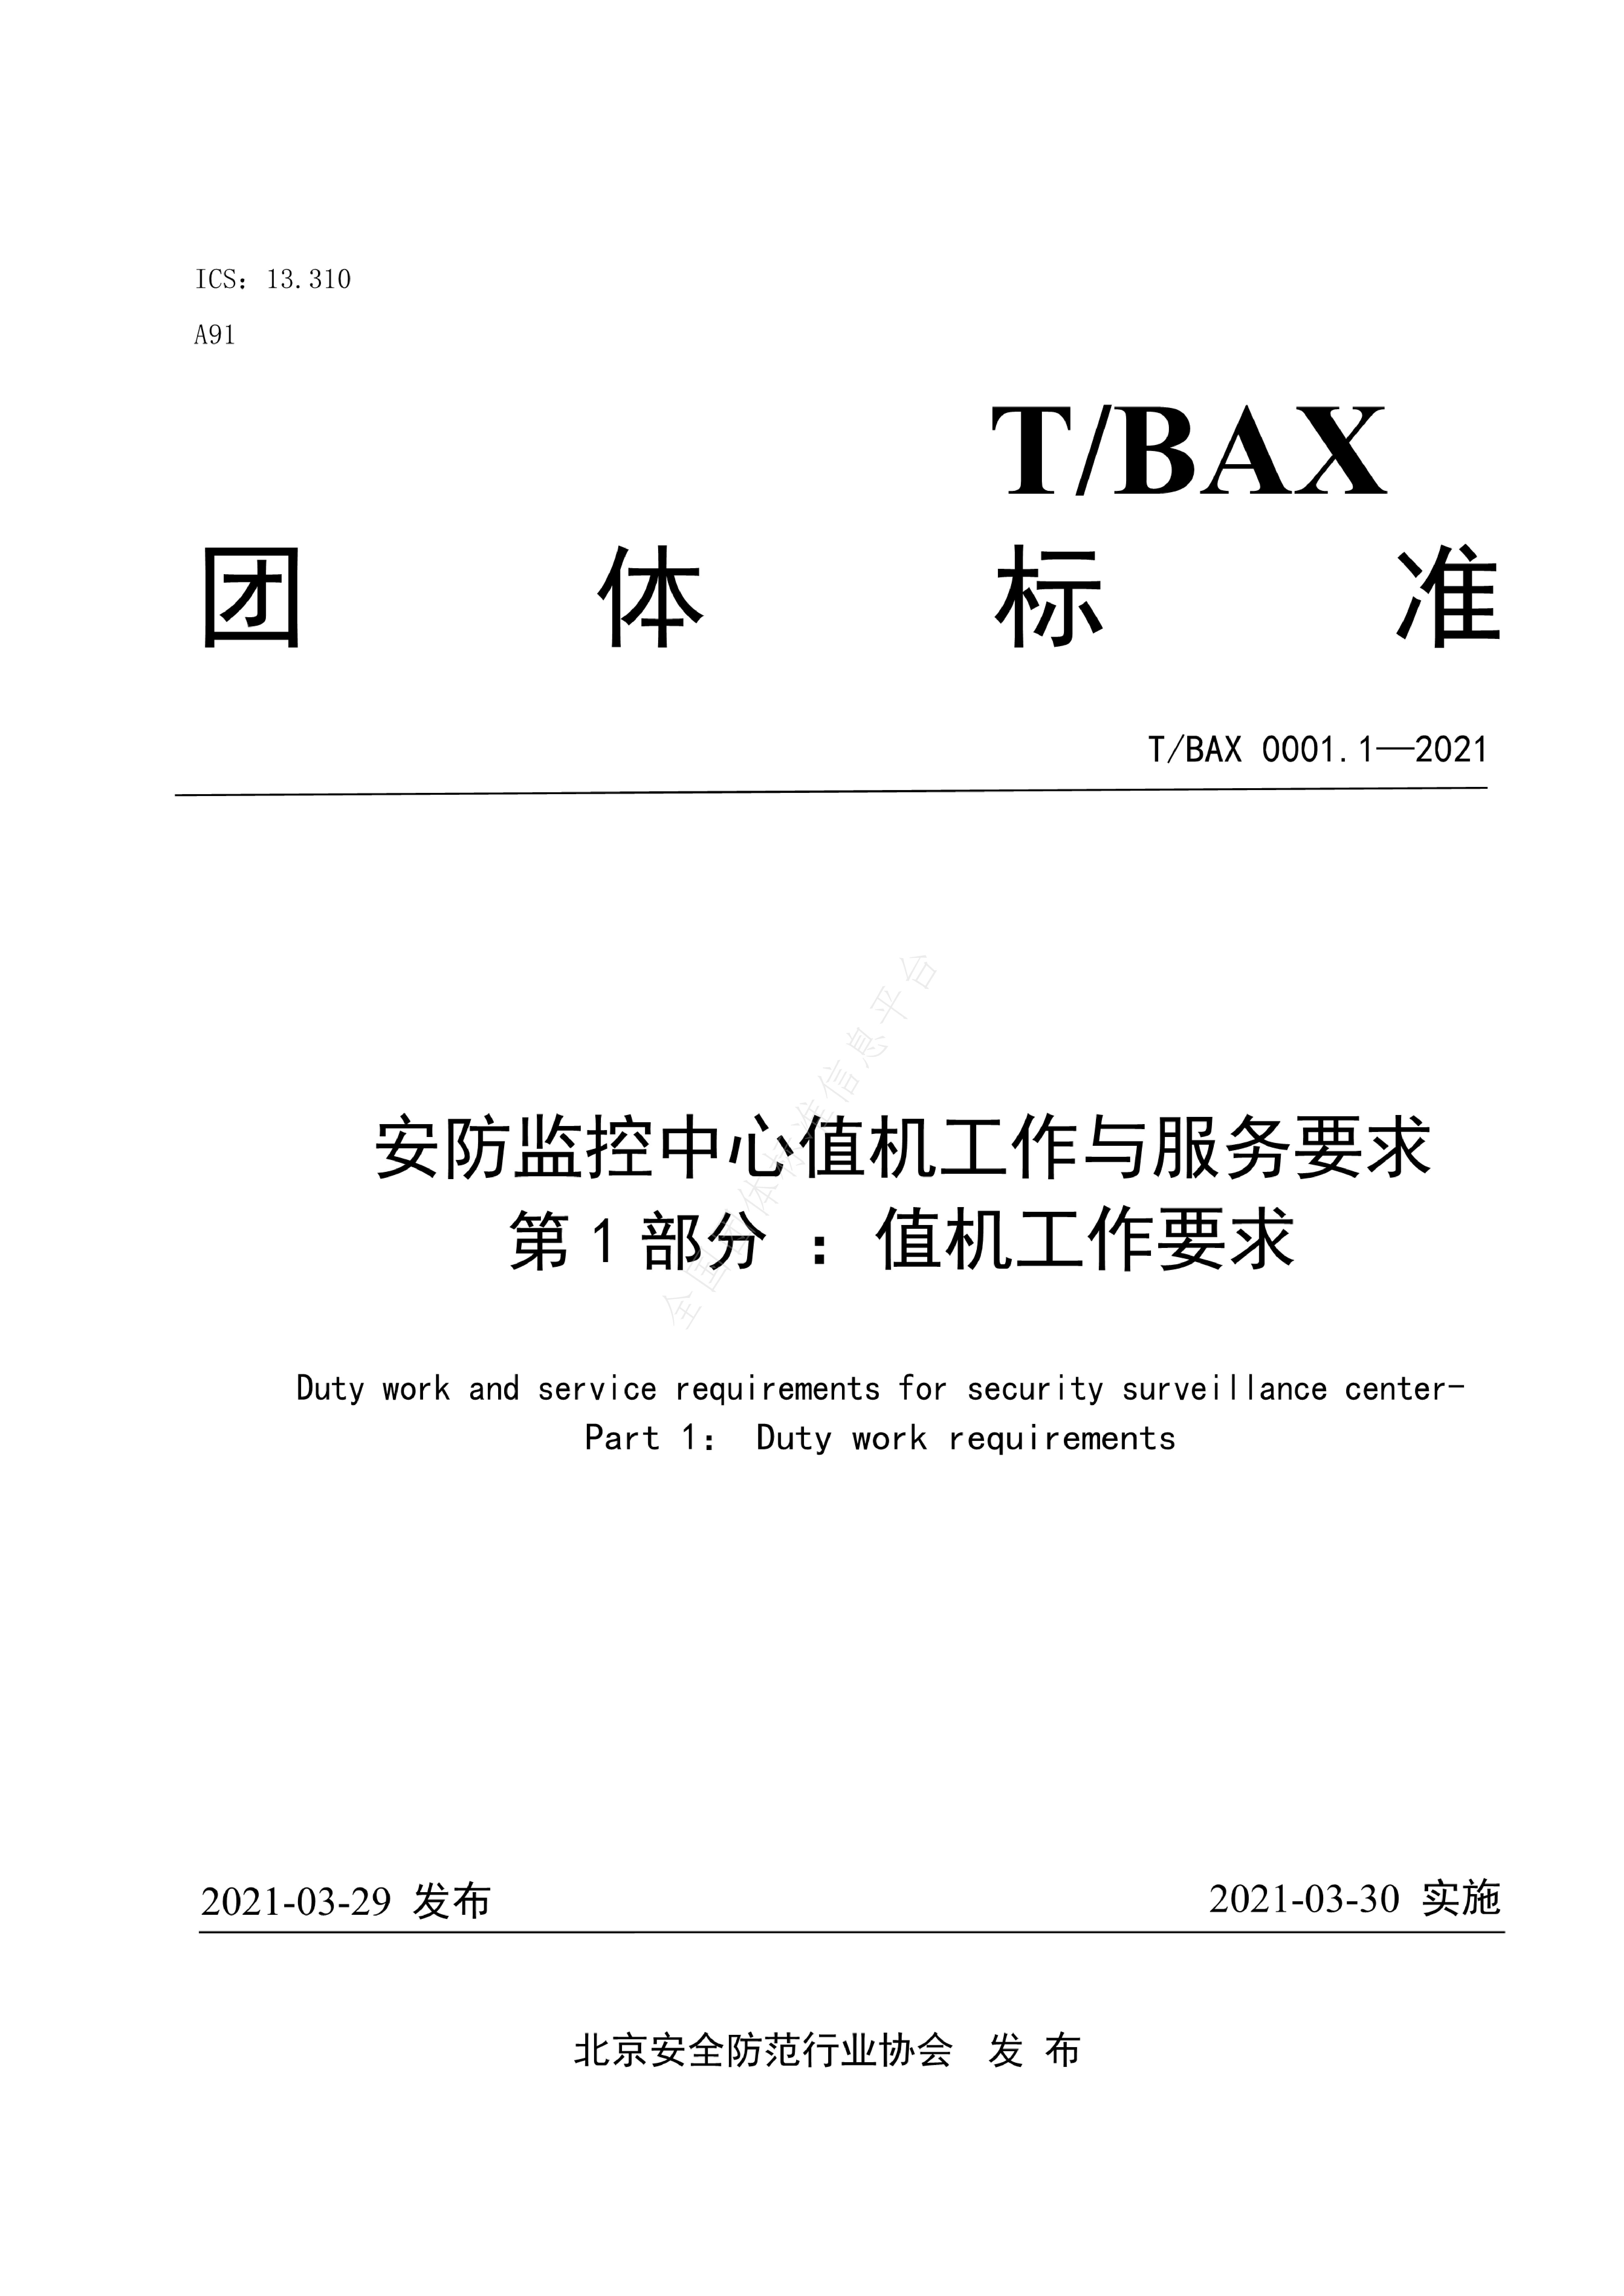 T/BAX 0001.1-2021封面图